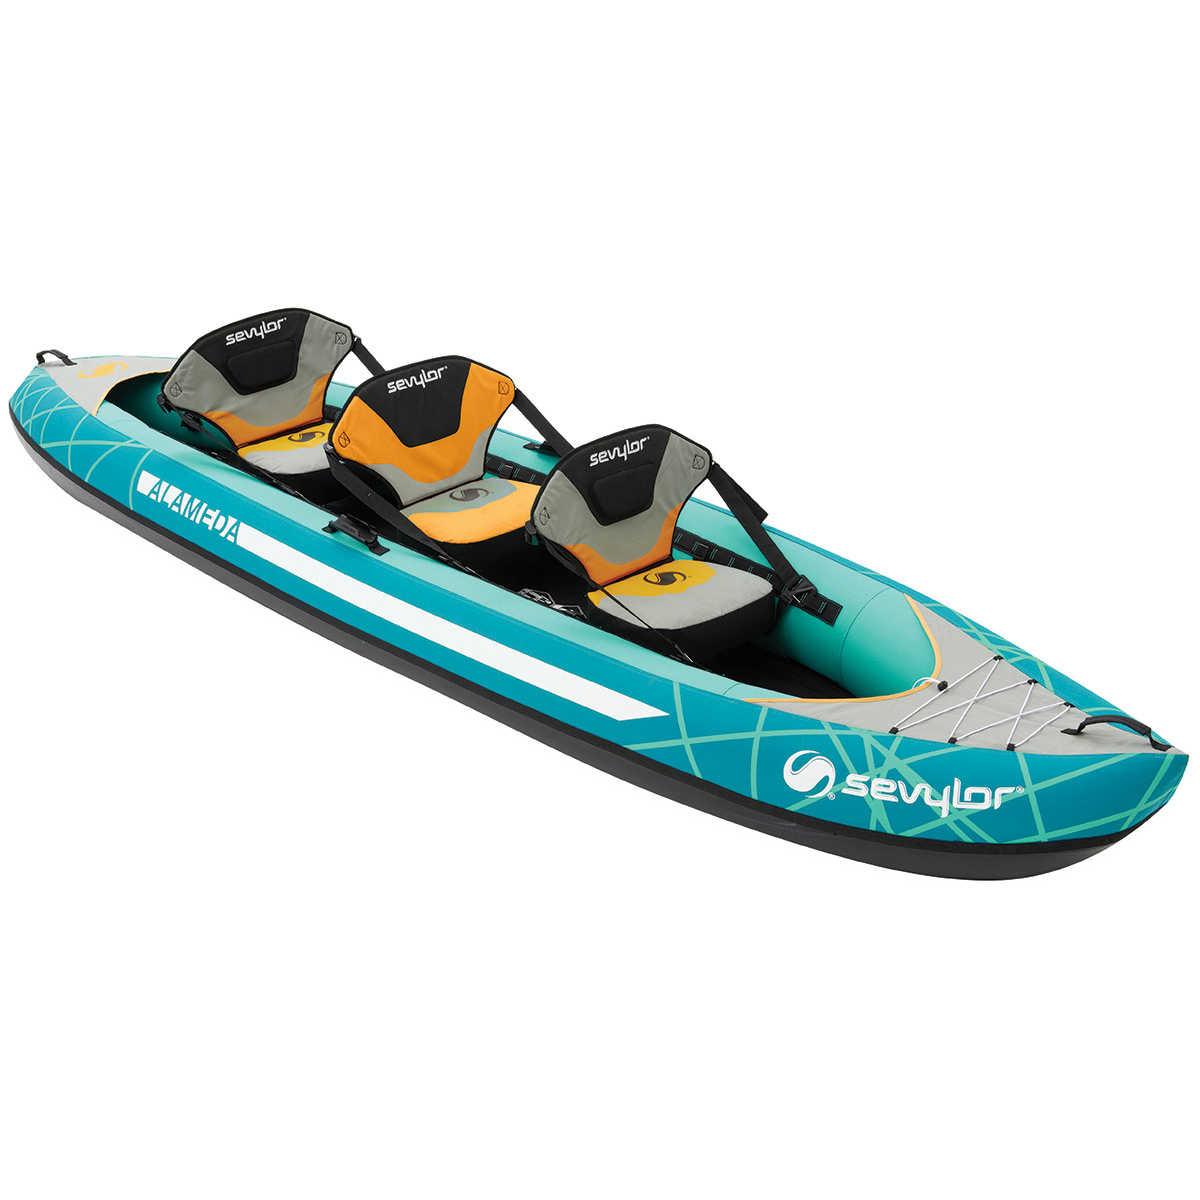 Alameda Inflatable sevylor kayak - Poole Harbour Watersports